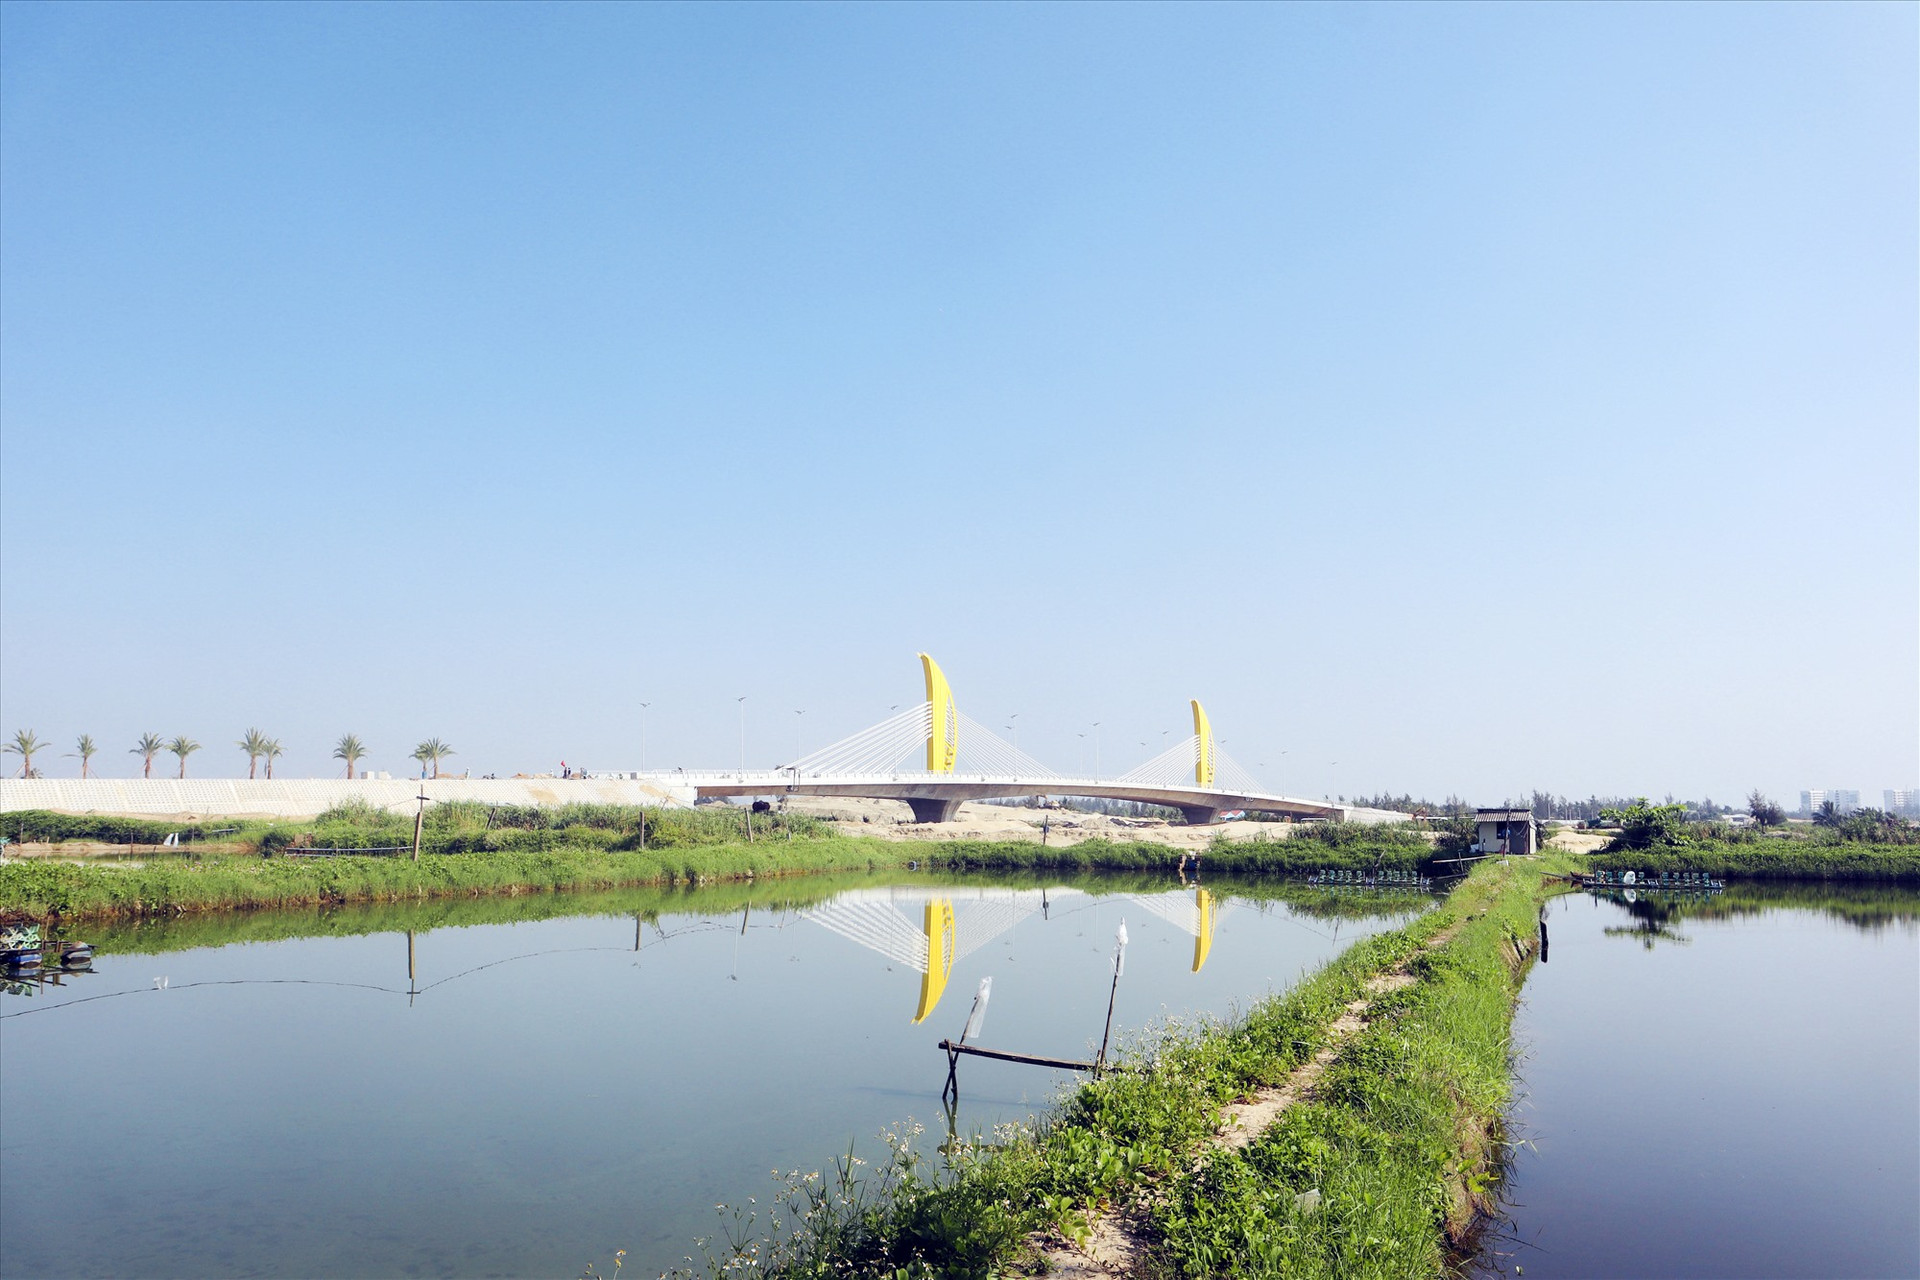 Cầu Nguyễn Duy Hiệu (cầu Ông Điền) bắc qua sông Cổ Cò dự kiến thông xe kỹ thuật vào cuối tháng 4 này. Ảnh: Q.T